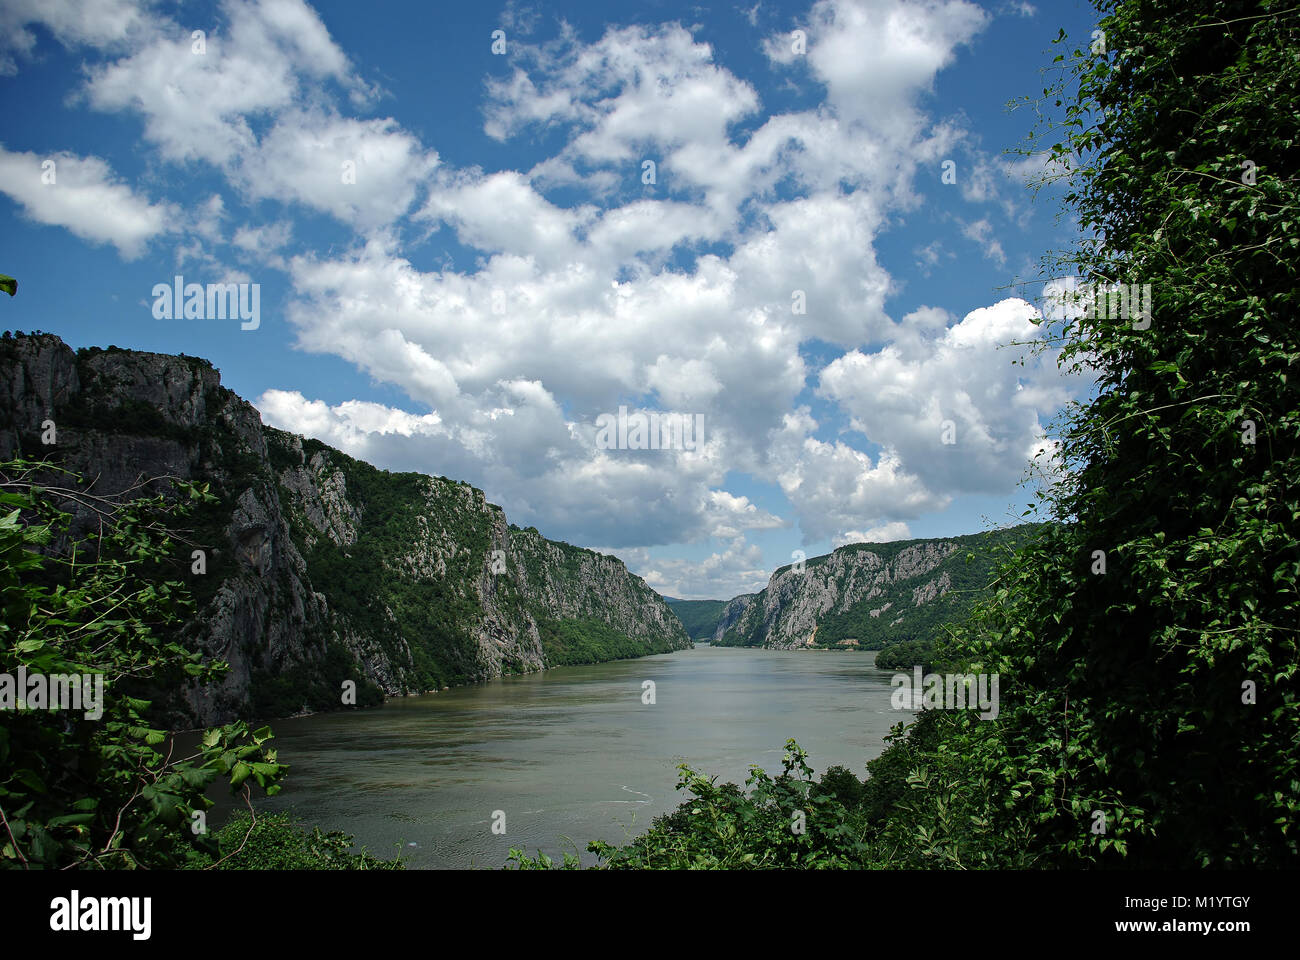 Les portes de fer est d'une gorge sur le Danube. Il fait partie de la frontière entre la Serbie et la Roumanie. L'ensemble de Vranje forme le connect Banque D'Images